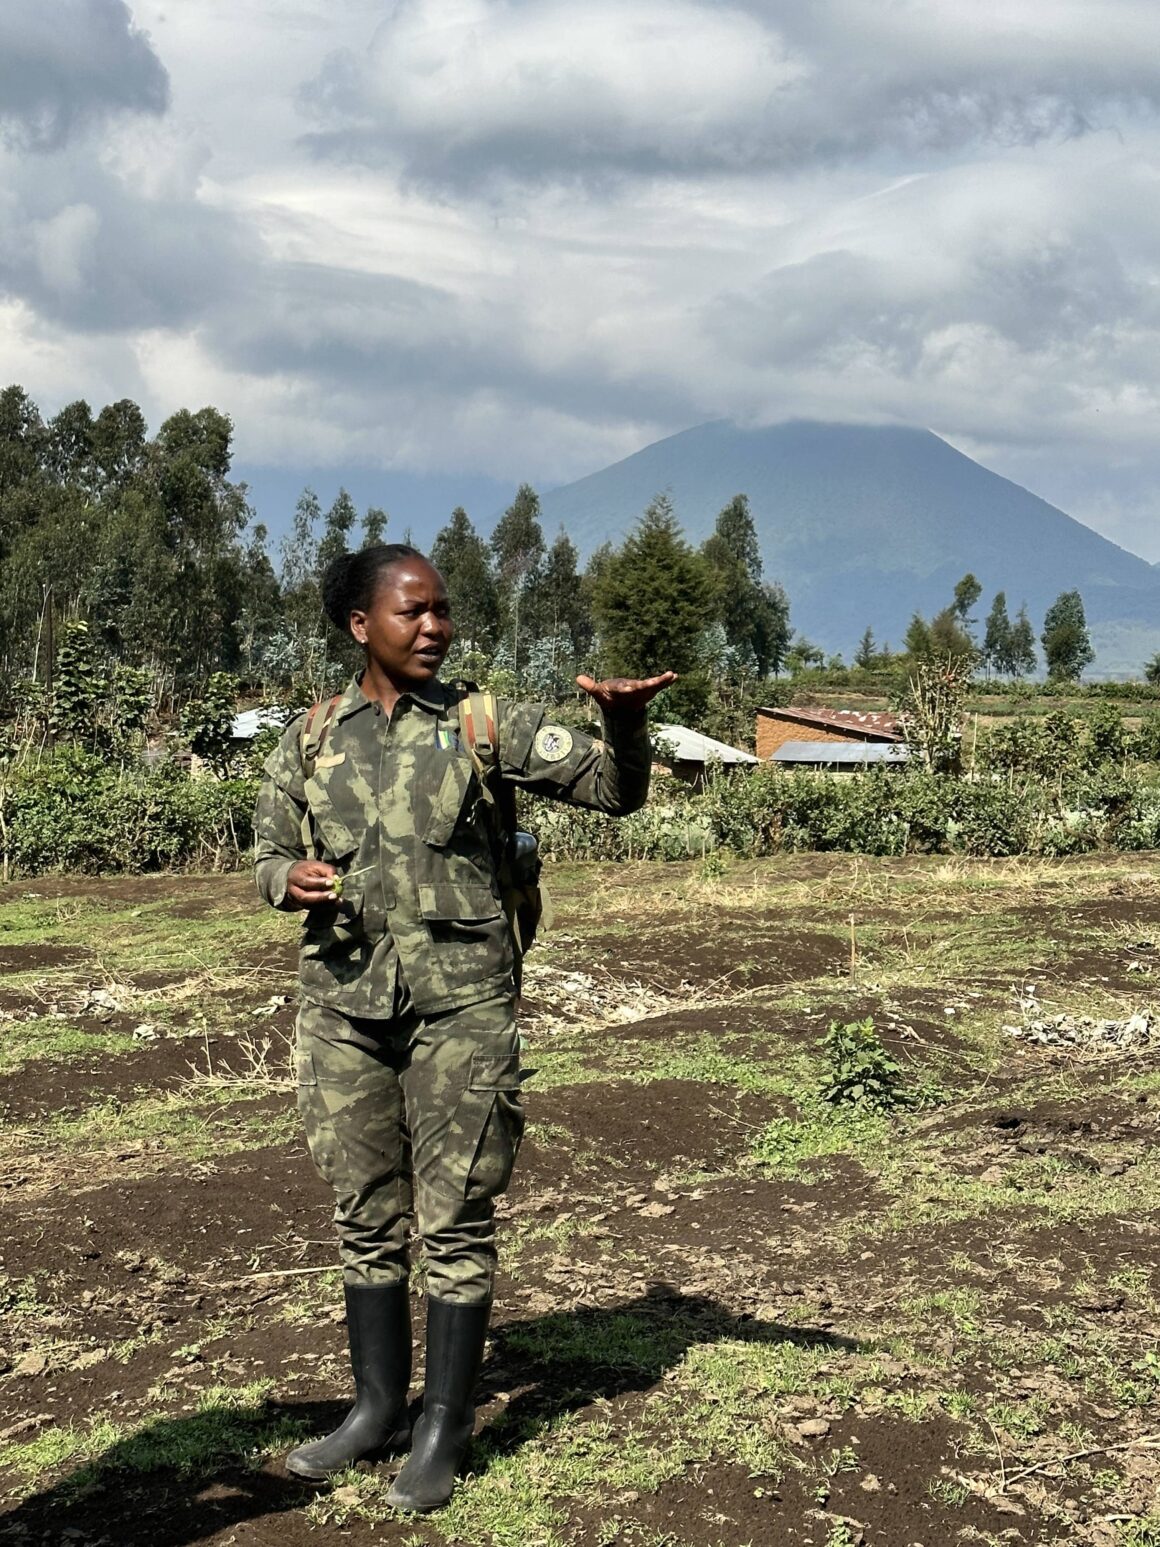 The park ranger informing of golden monkeys while on trek in Rwanda